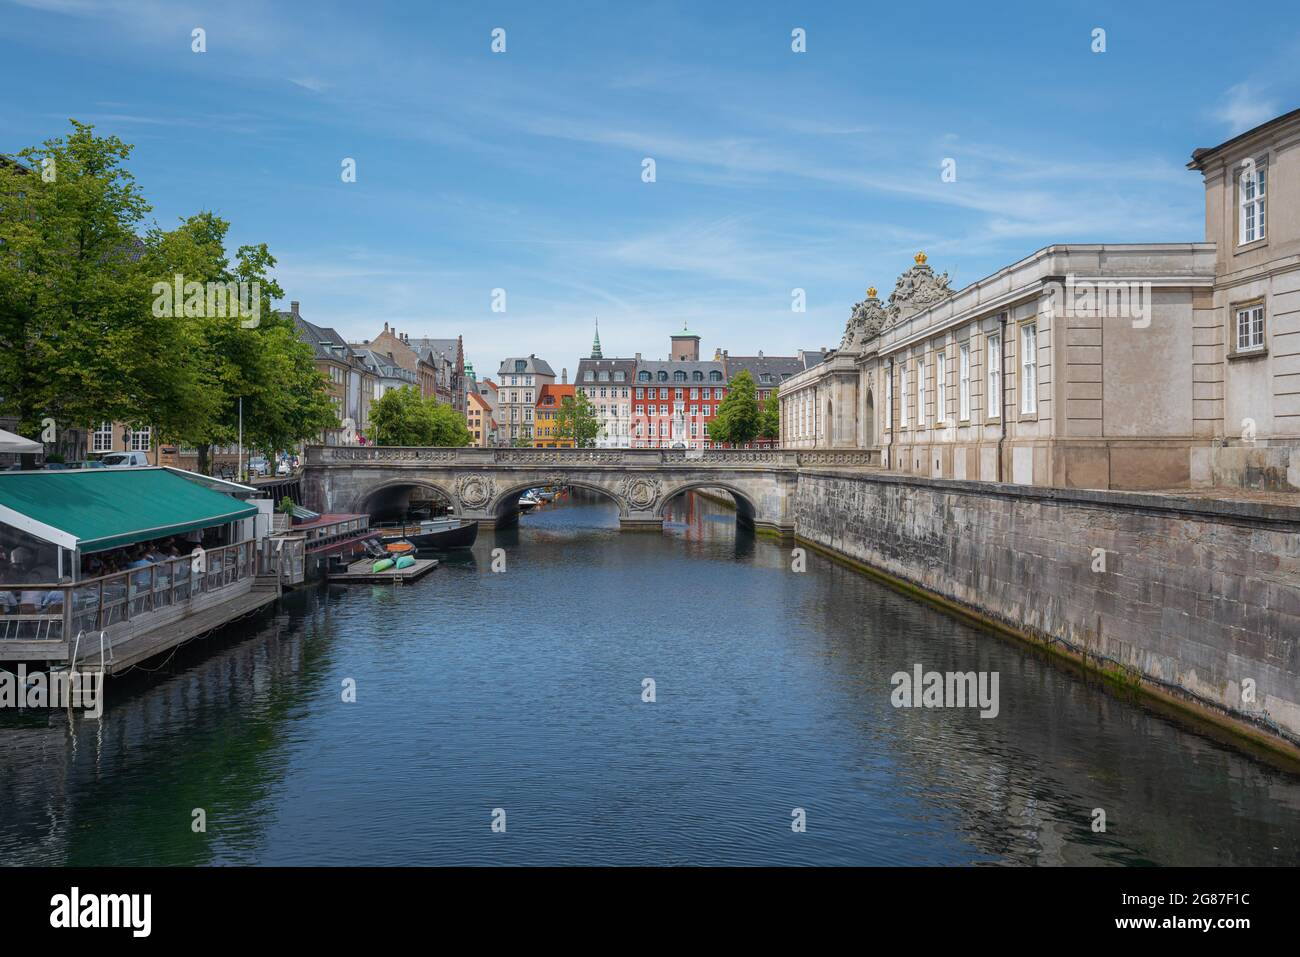 Canal Frederikholms, Puente de Mármol y Entrada al Palacio Christiansborg - Copenhague, Dinamarca Foto de stock